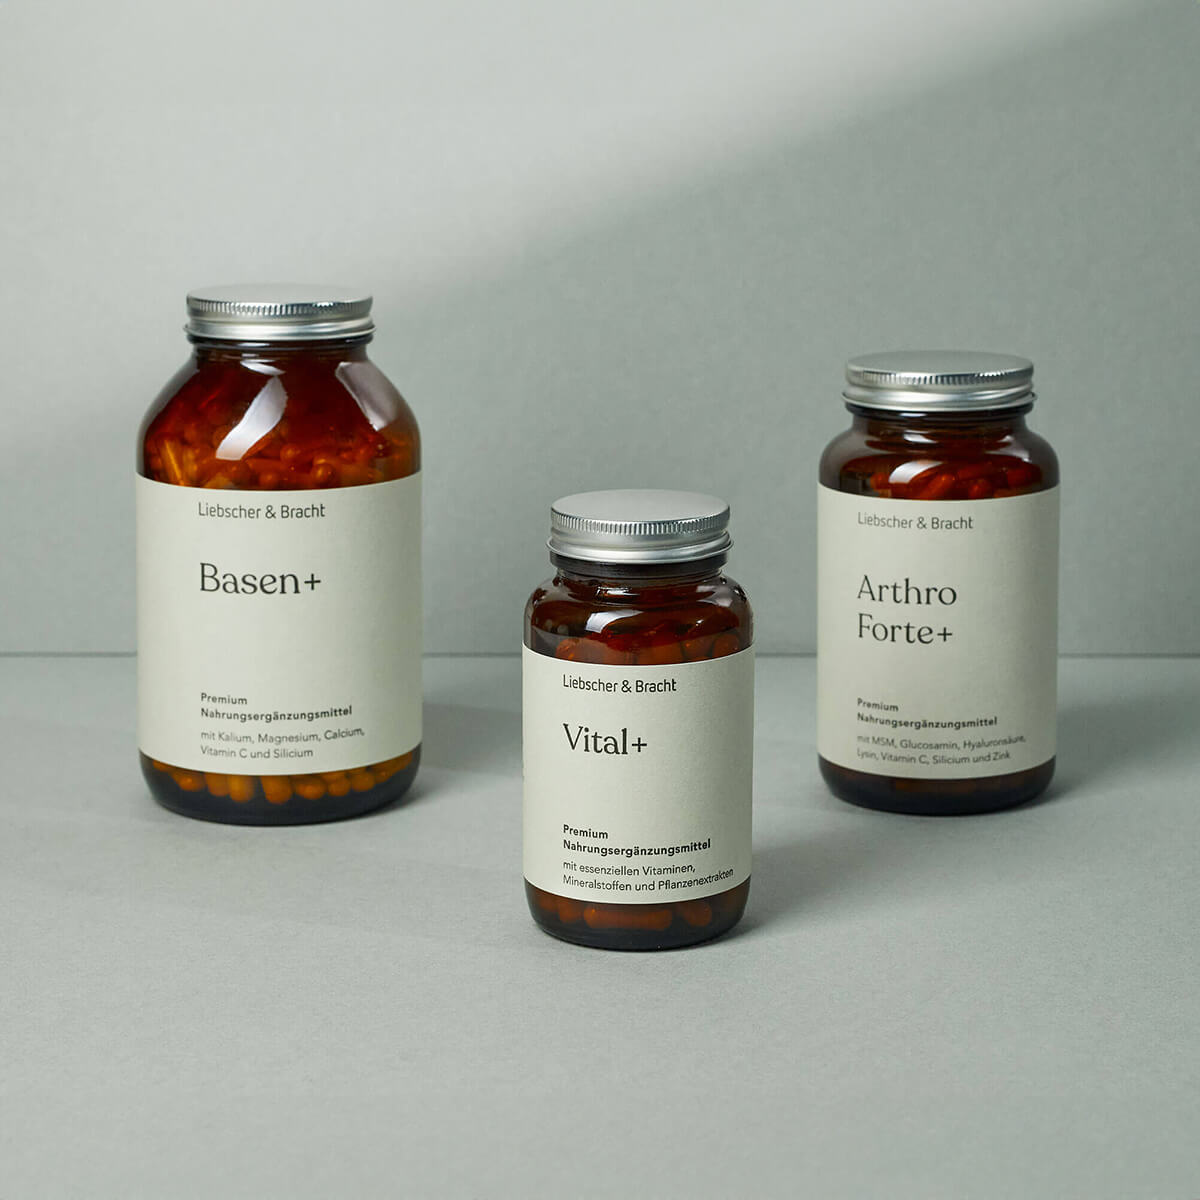 Basen+, Vital+ und Arthro Forte+ Nahrungsergänzungsmittel von Liebscher & Bracht in braunen Glasbehältern